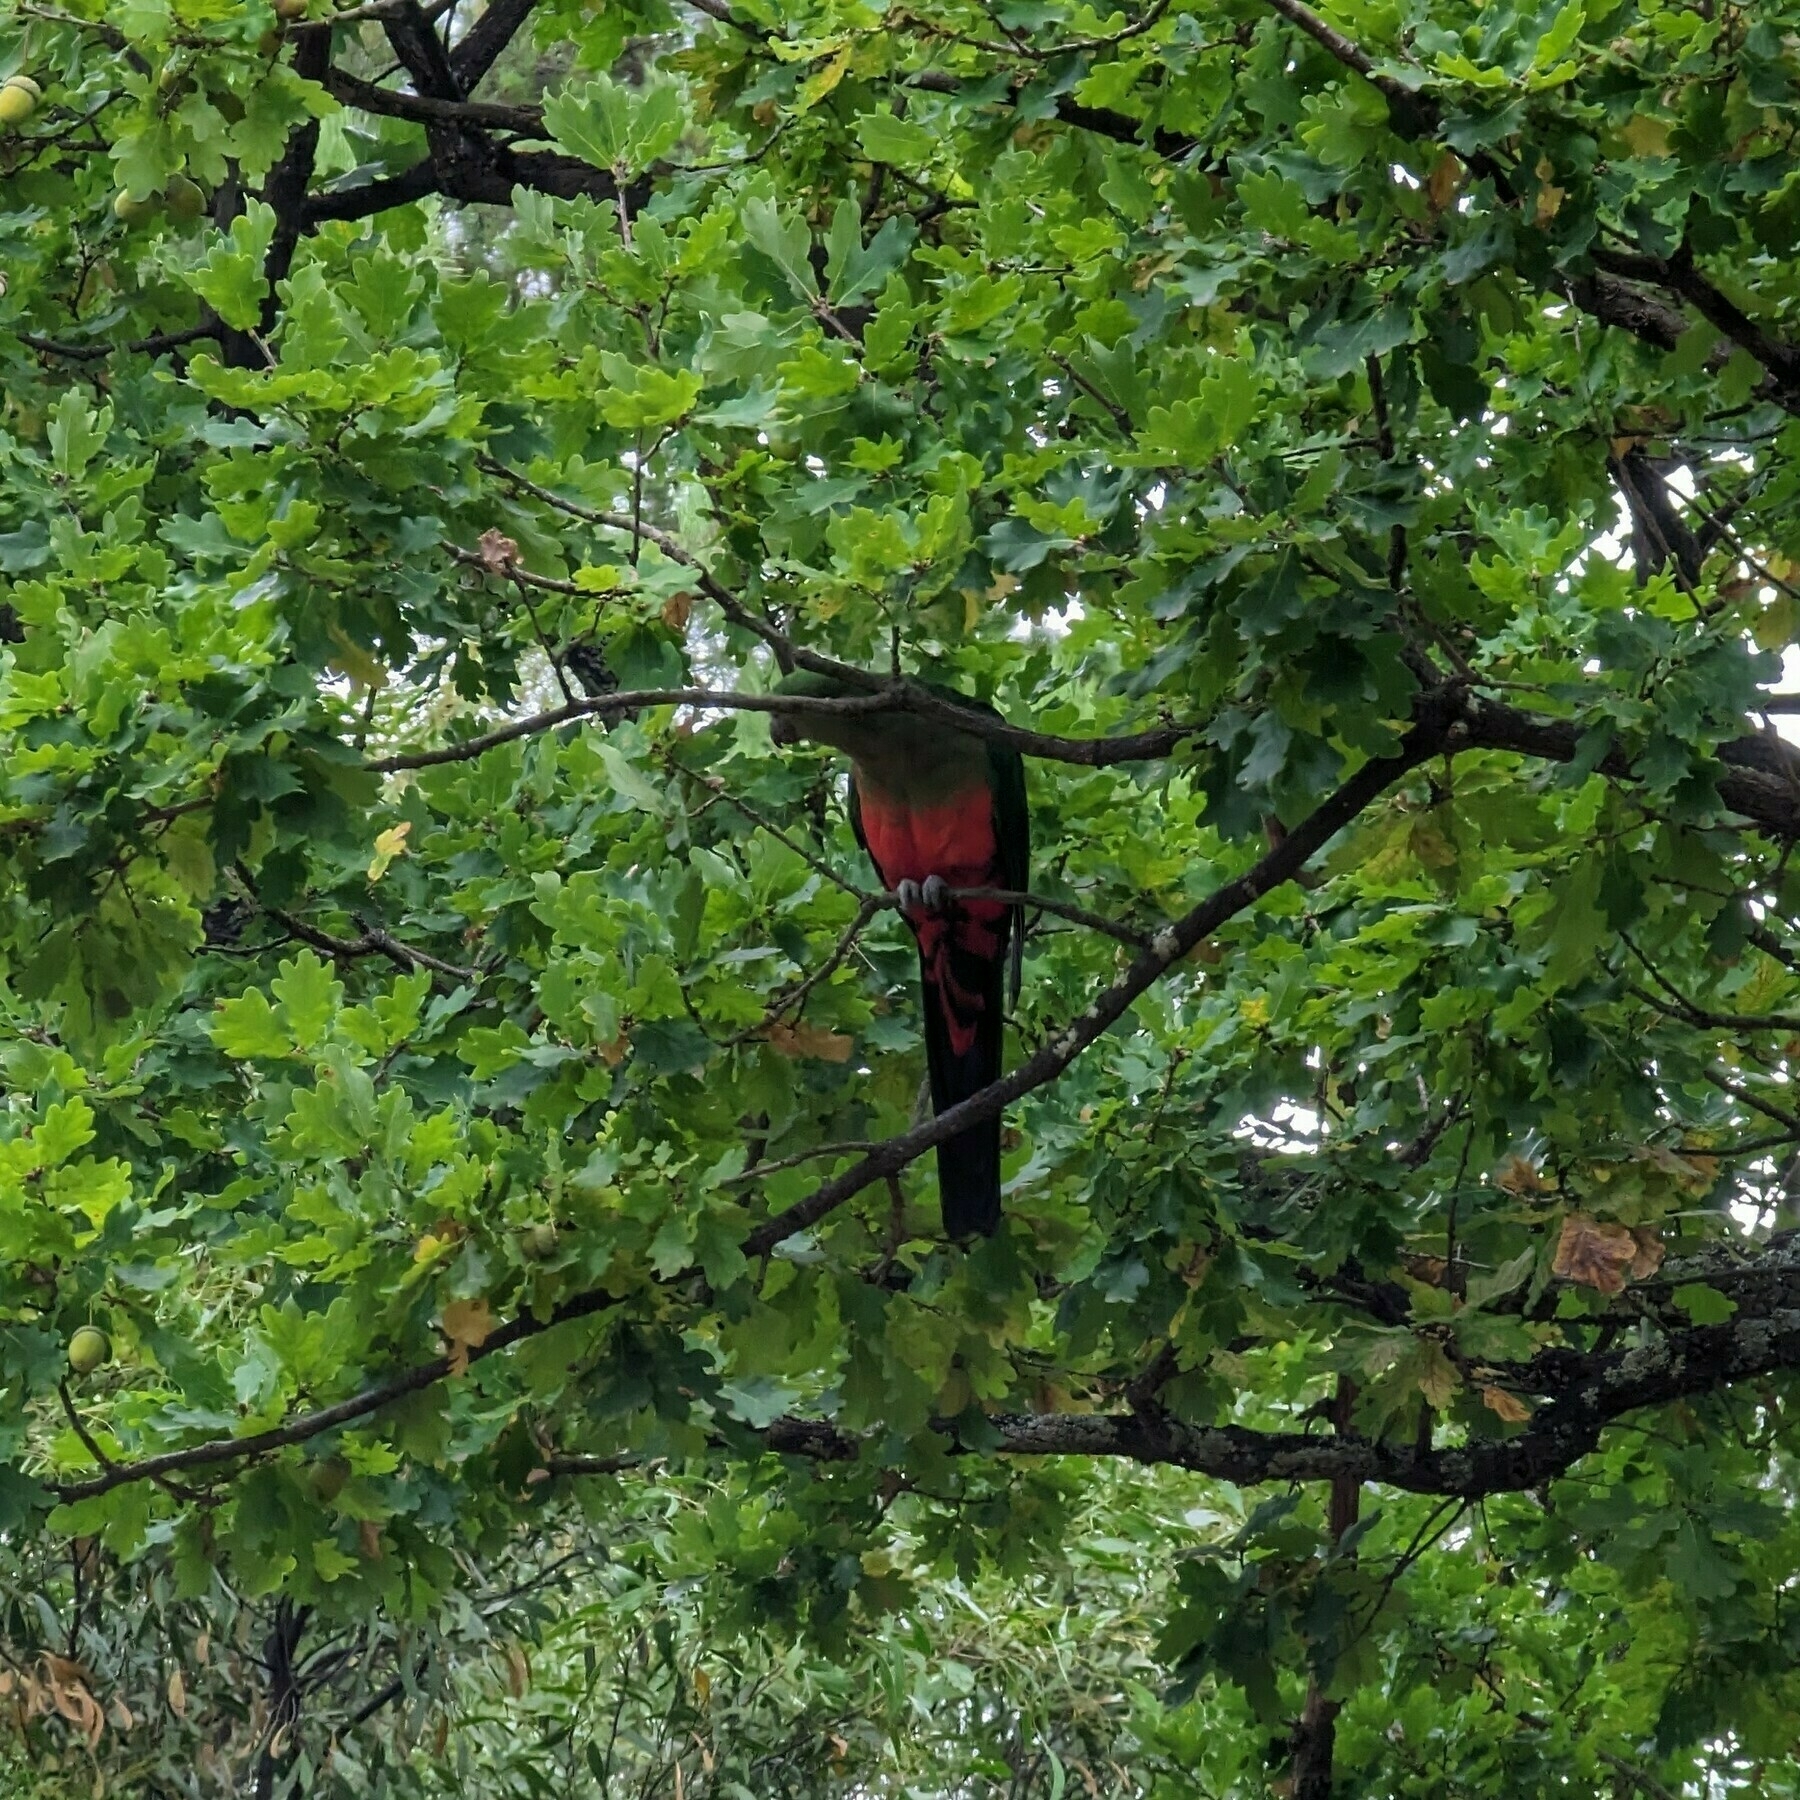 Female king parrot in an oak tree